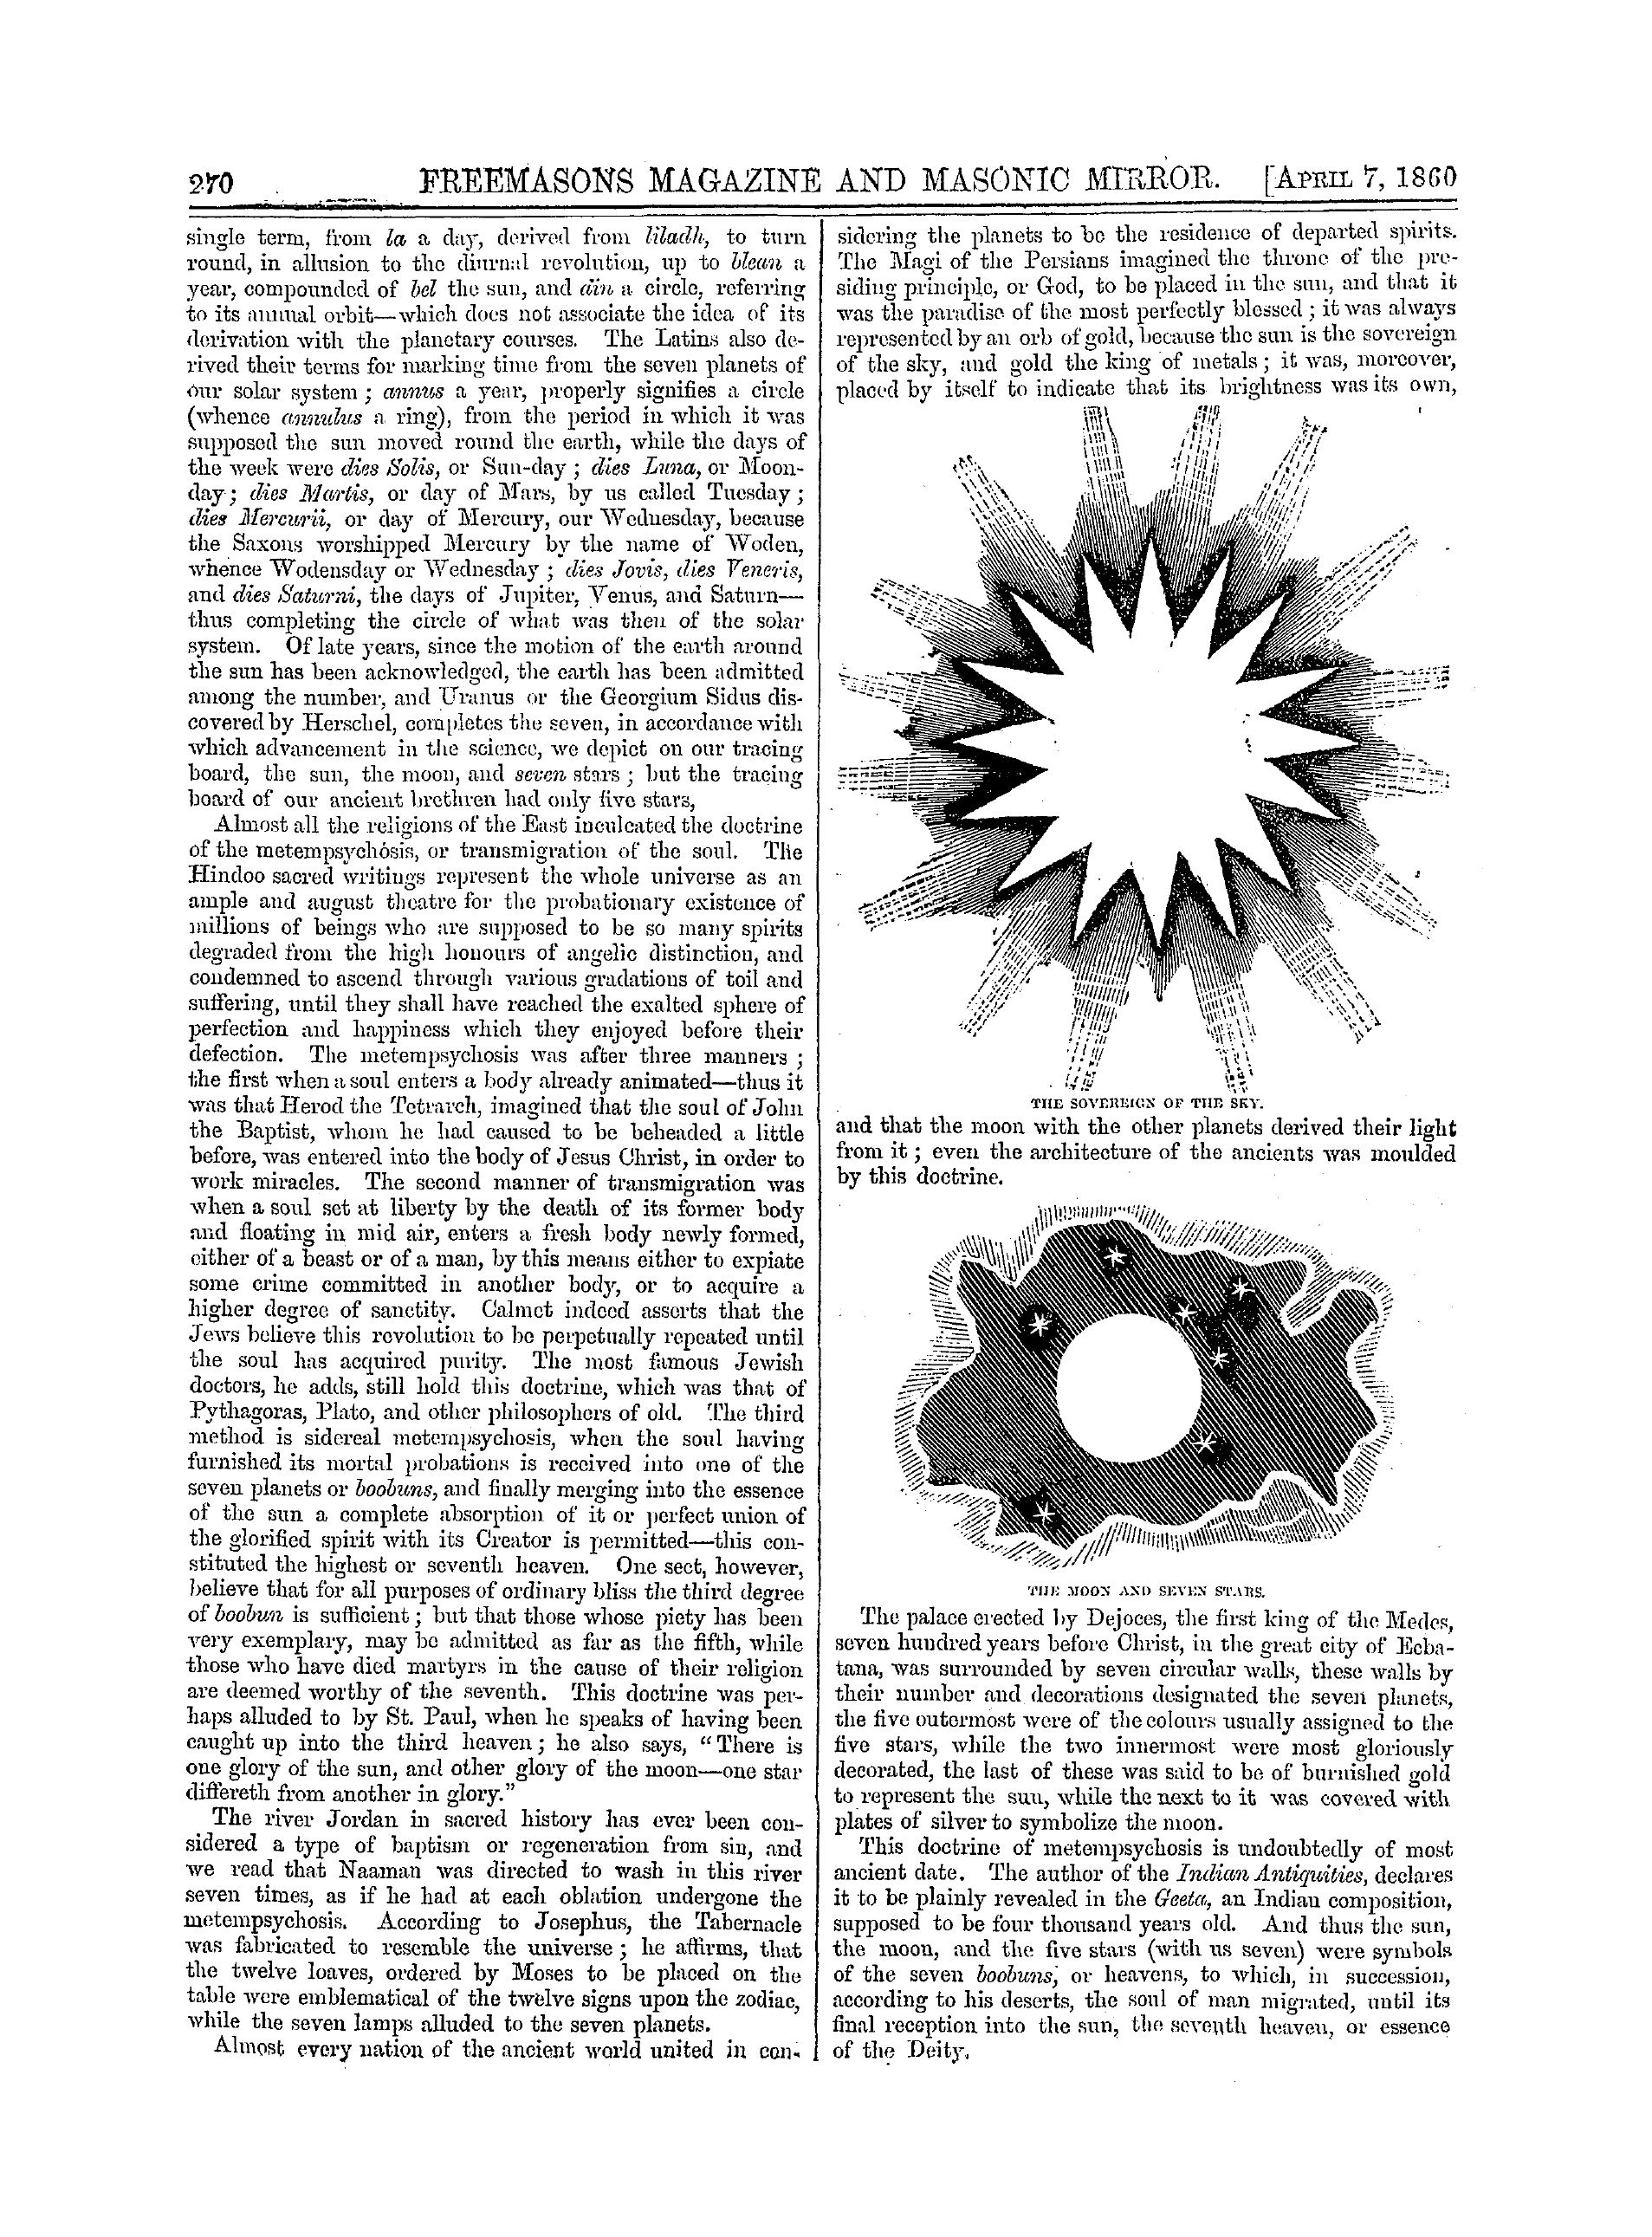 The Freemasons' Monthly Magazine: 1860-04-07: 10